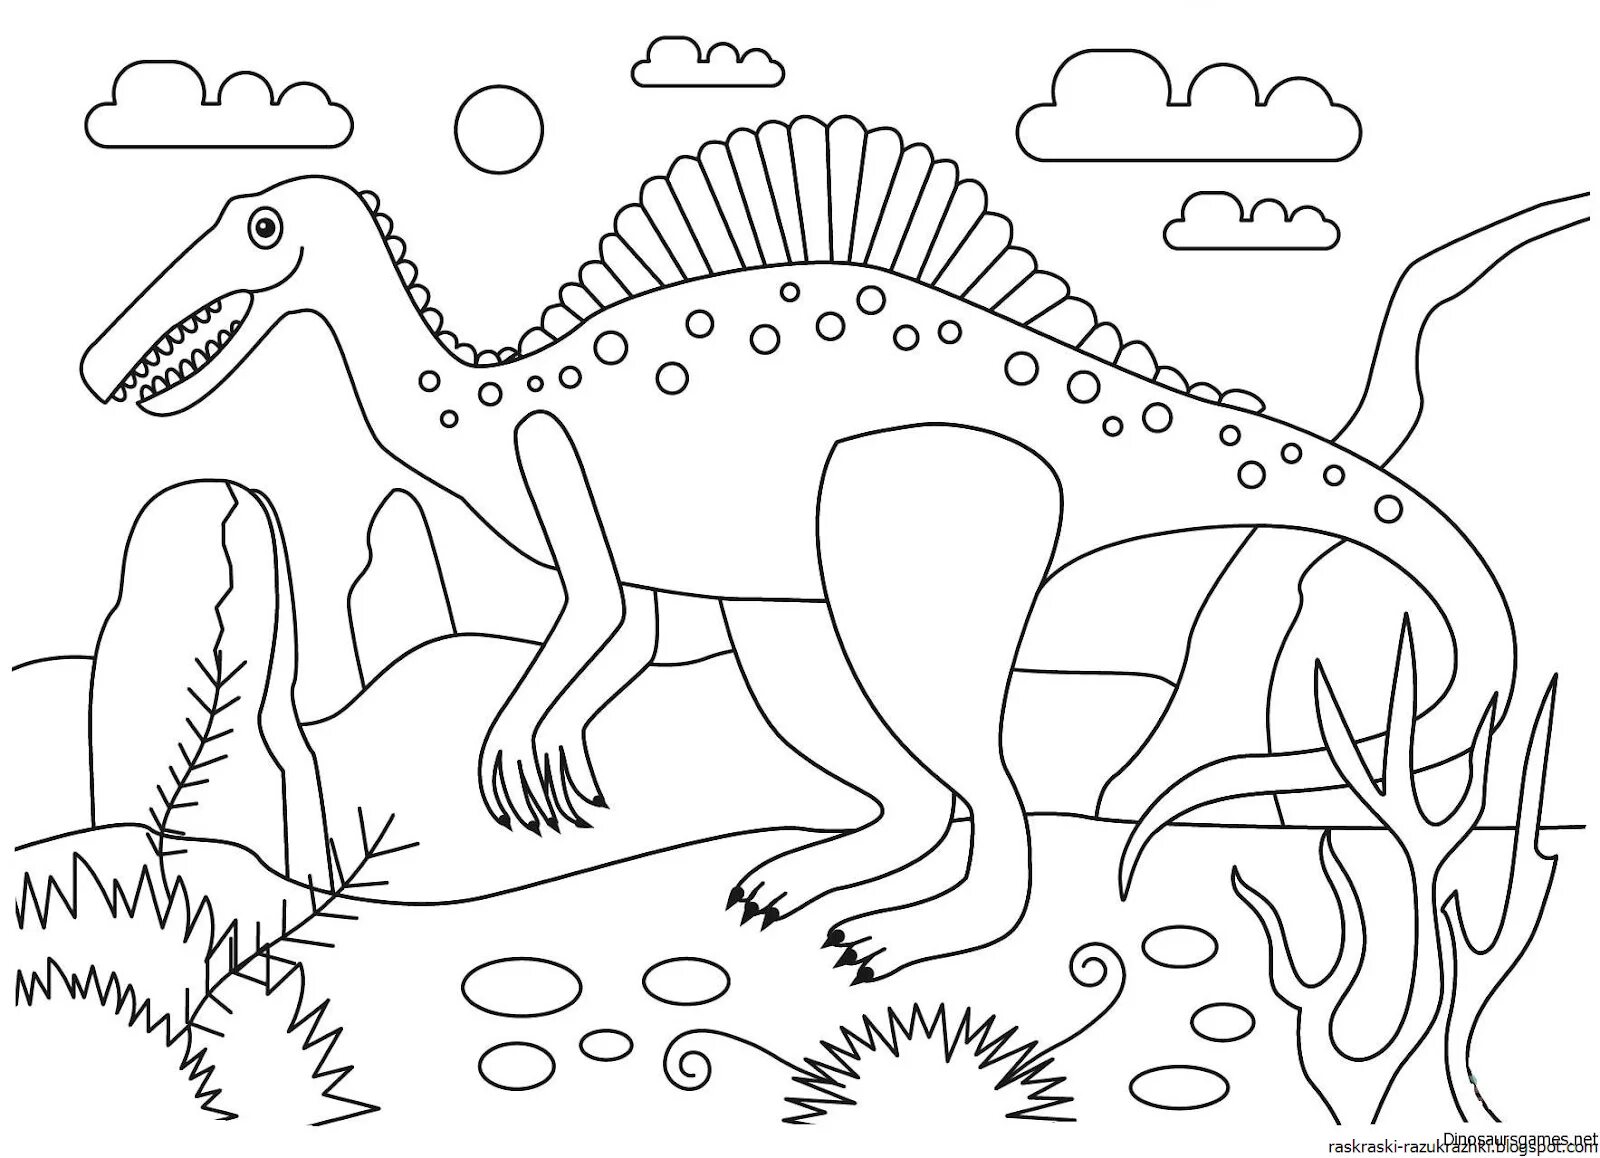 Динозавры раскраски для детей распечатать на А4 бесплатно